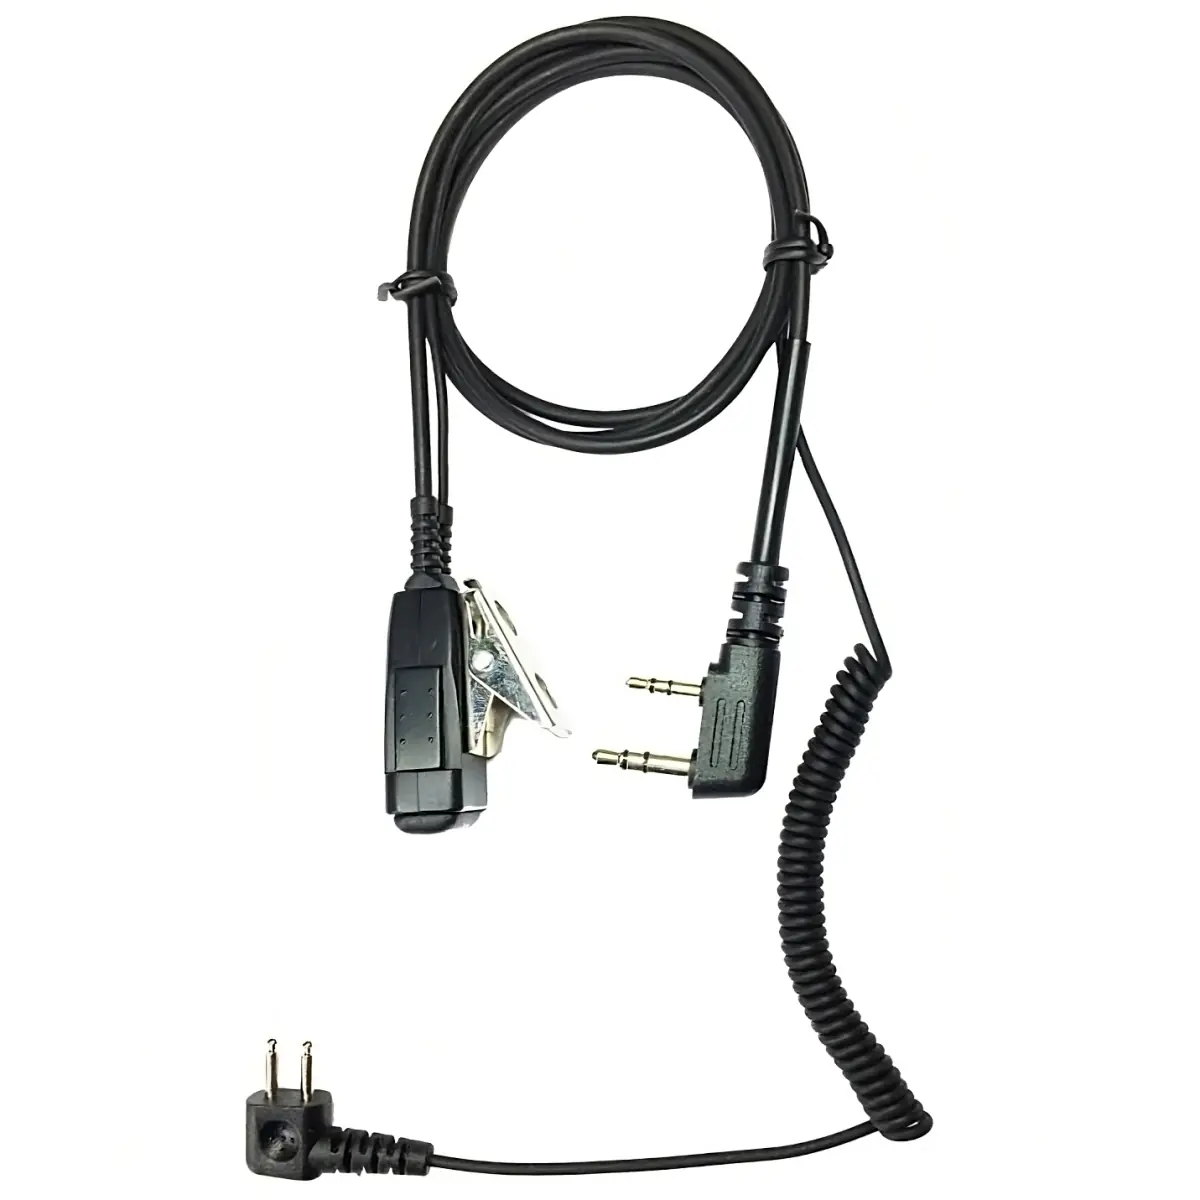 Kabel voor headset 3M Peltor (SportTac, ...) naar Portofoons Midland G10 Pro, G11 Pro, G13, CT590S, CT990-EB